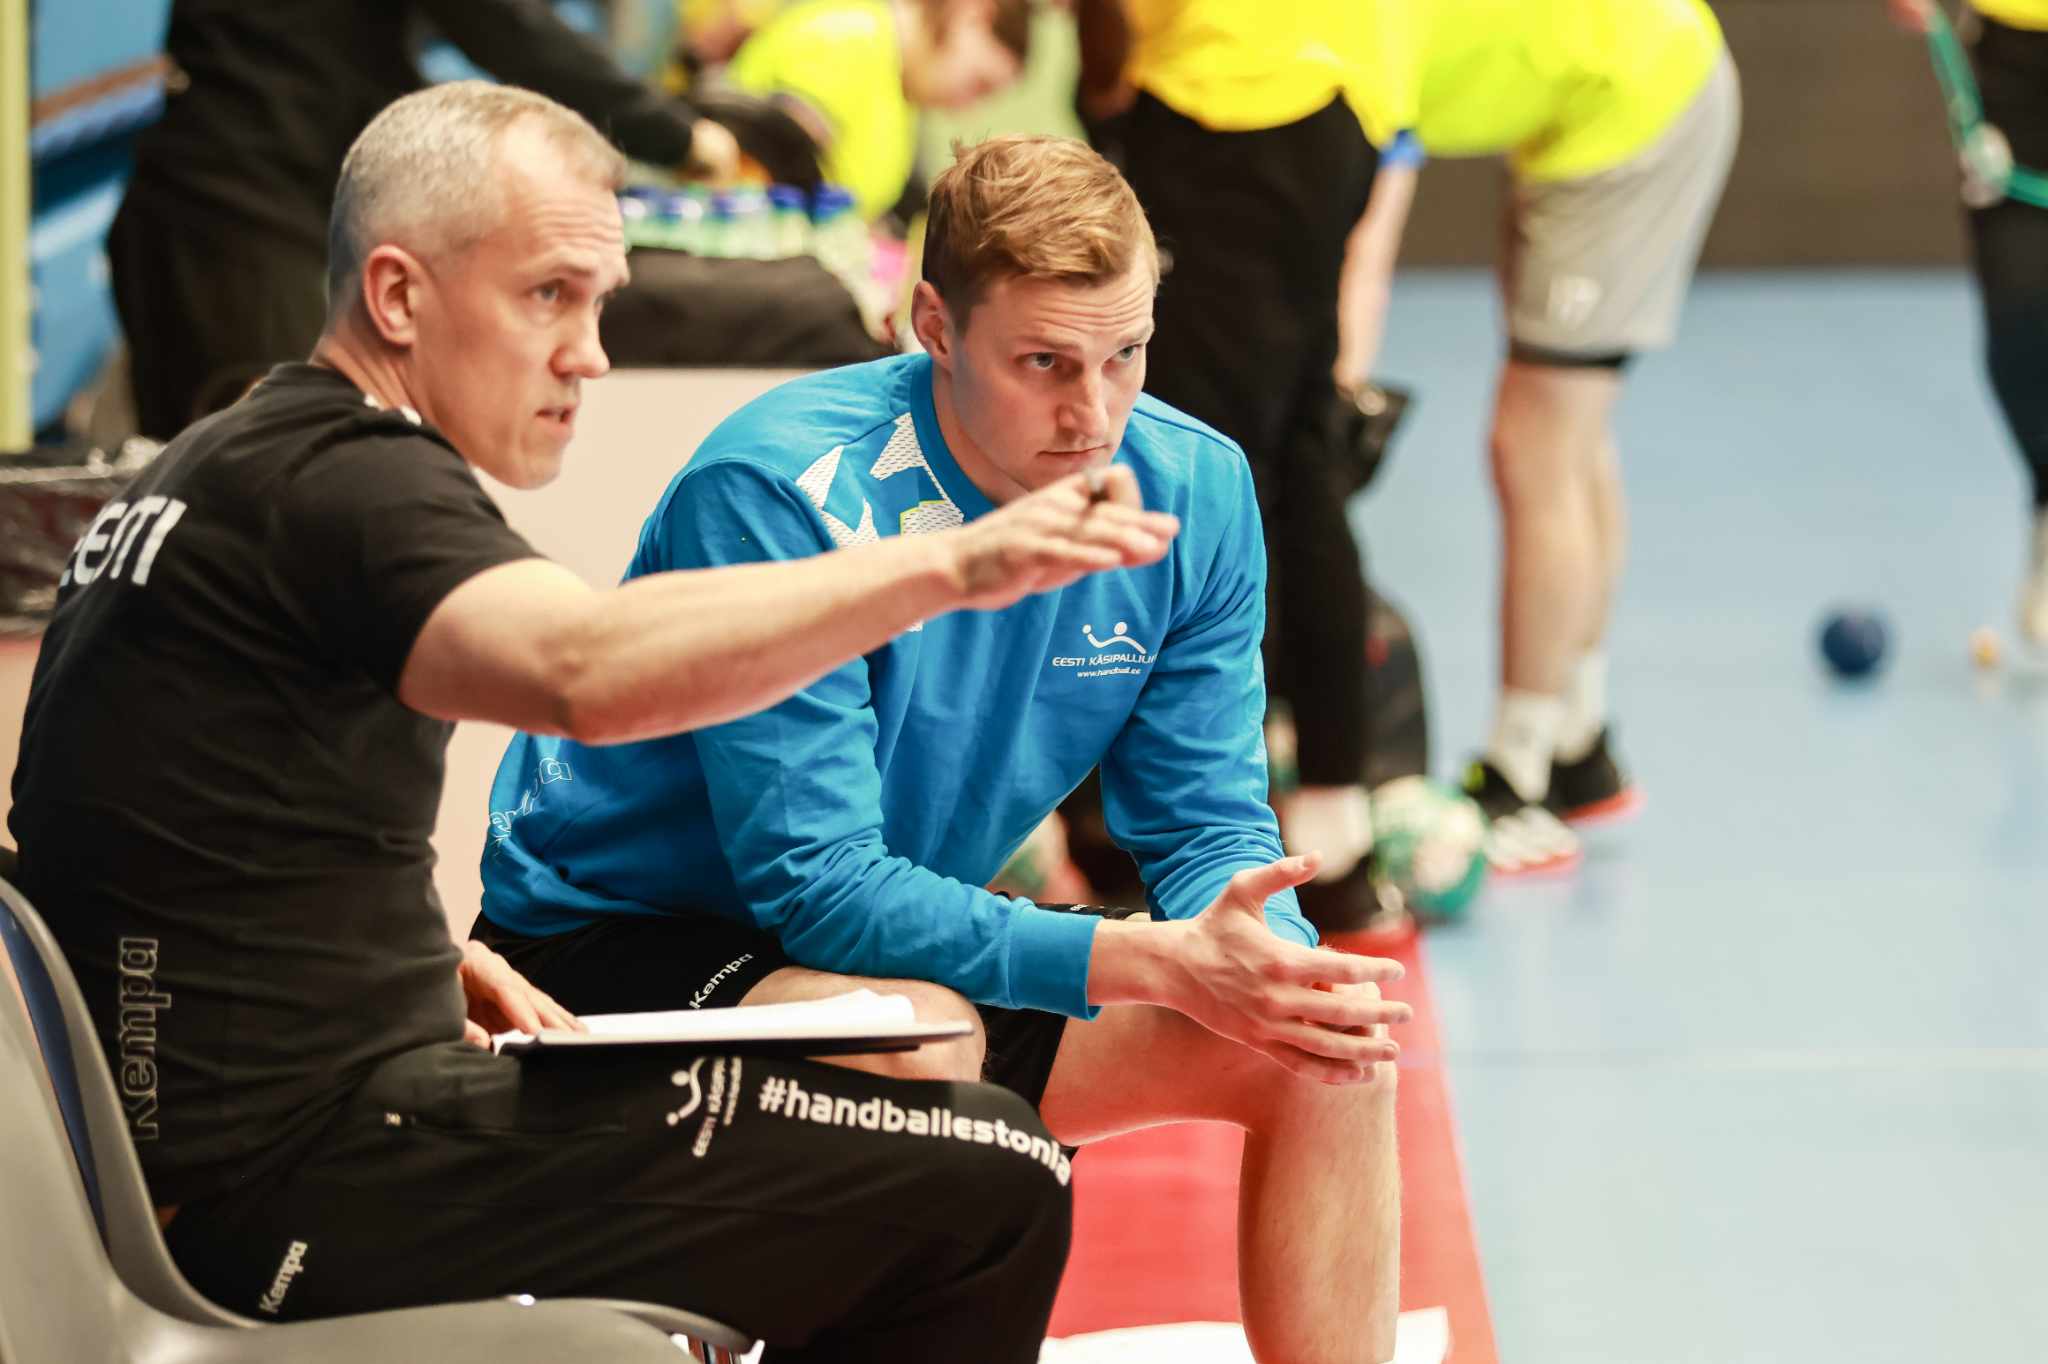 Eesti meeste käsipallikoondis kohtub Ukrainaga: tuleb uued rollid paika saada